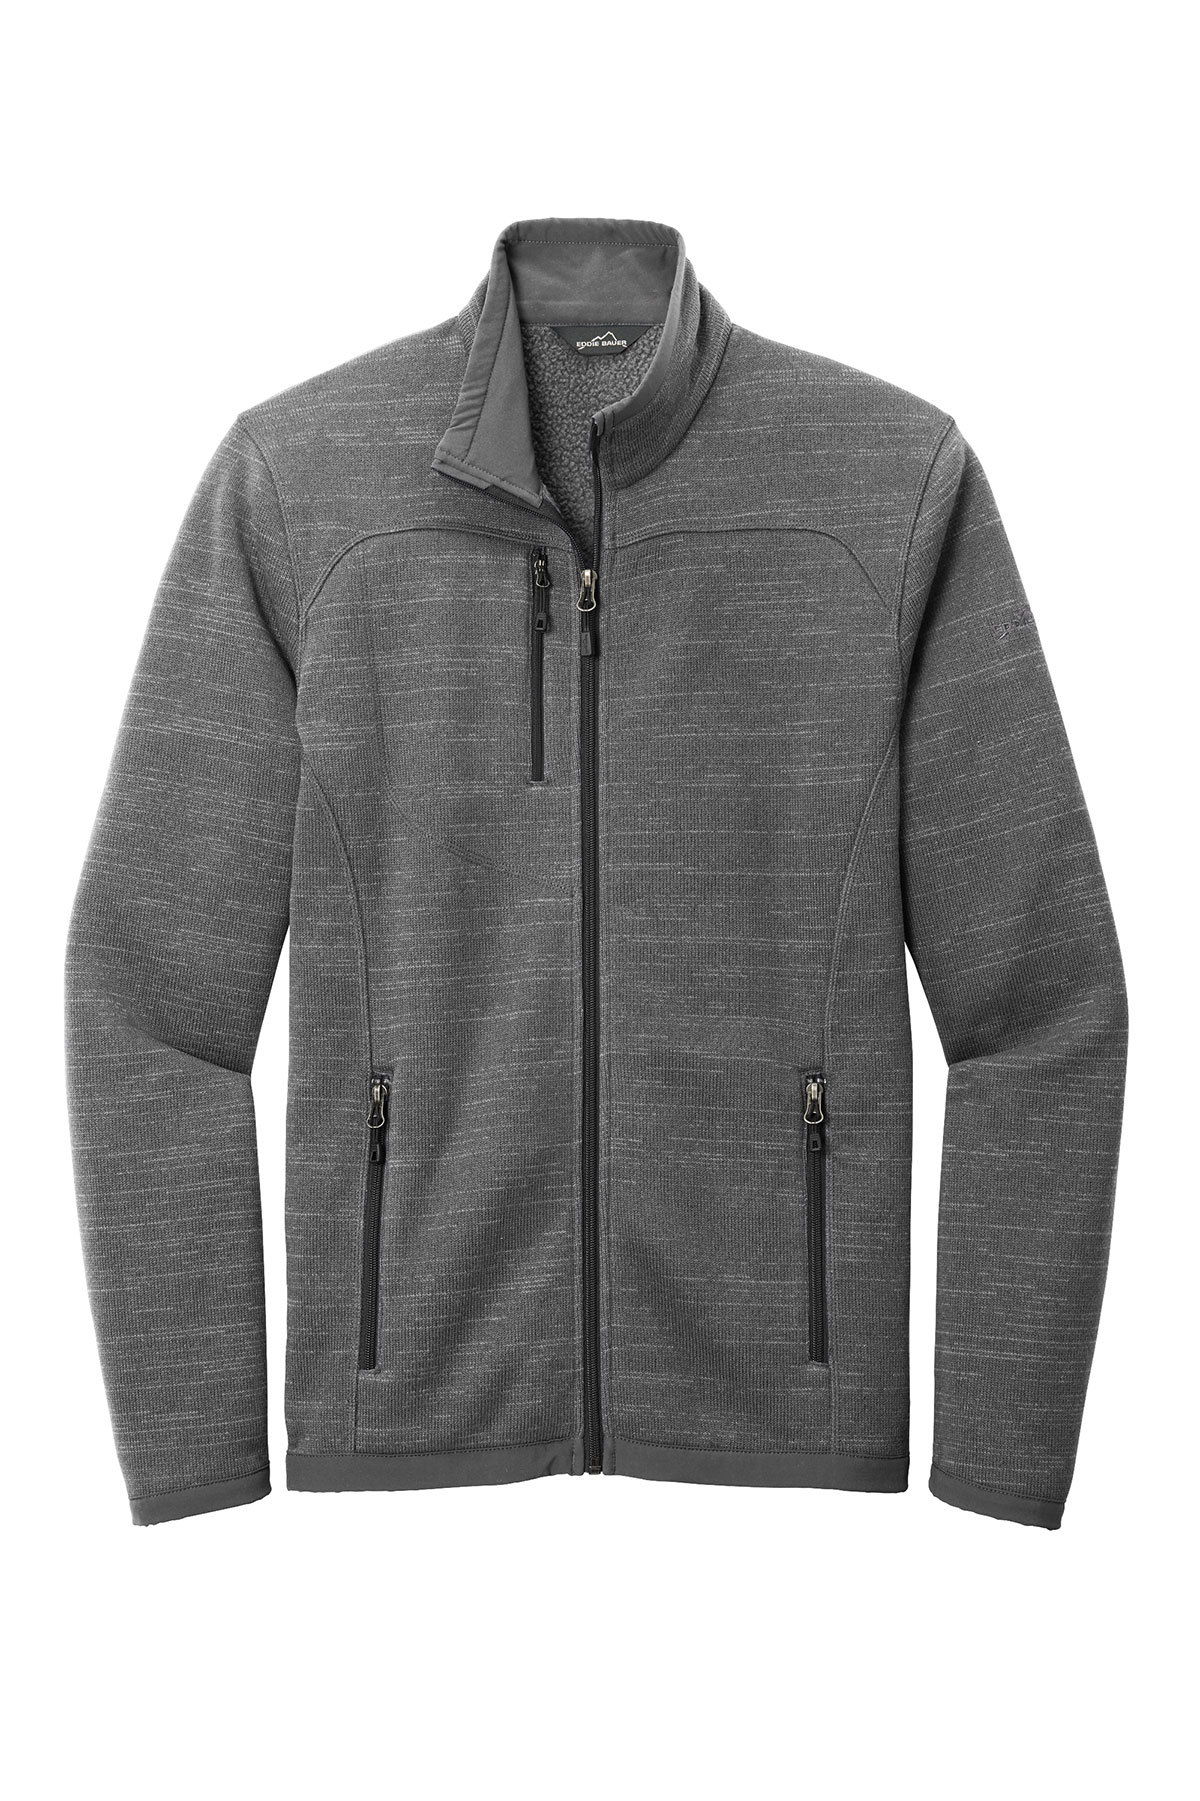 Eddie Bauer Sweater Fleece Full-Zip | Product | Company Casuals